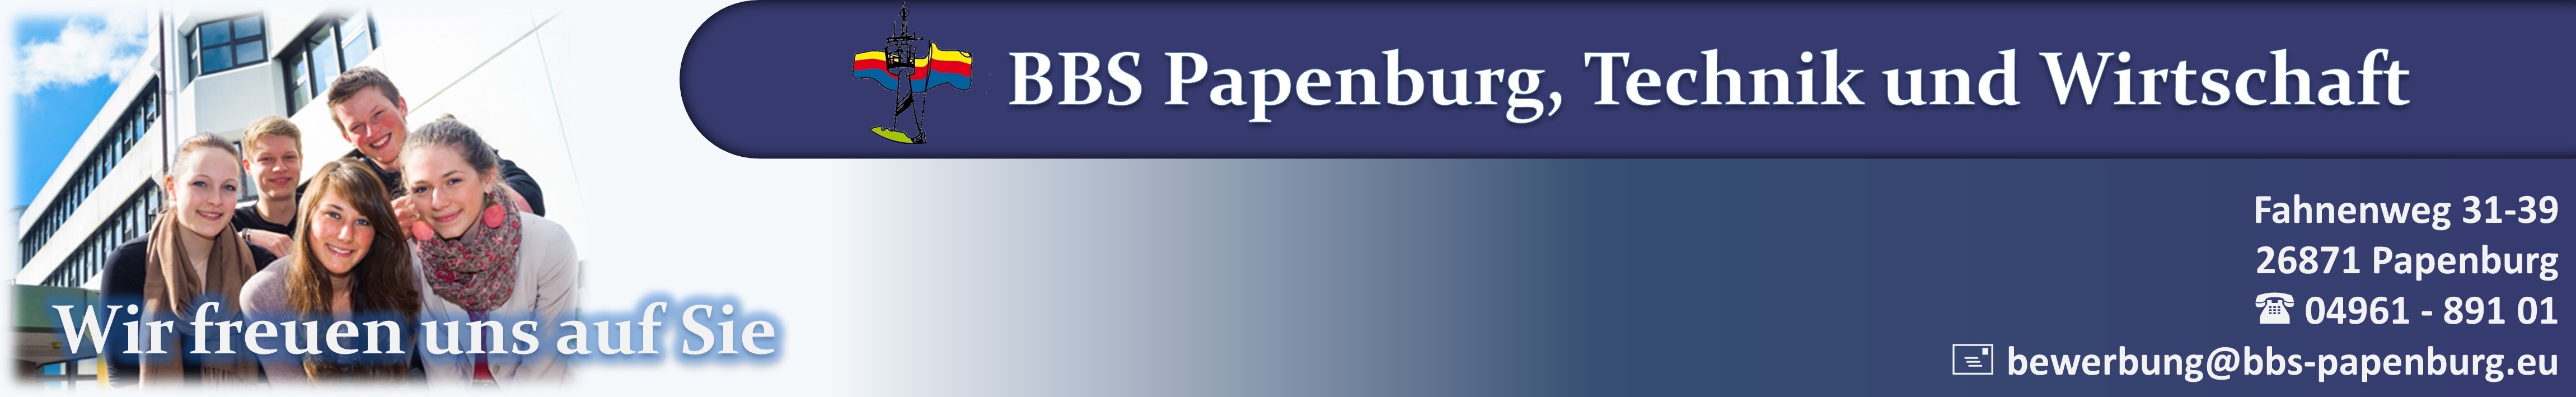 Anmeldeportal der BBS Papenburg, Technik und Wirtschaft